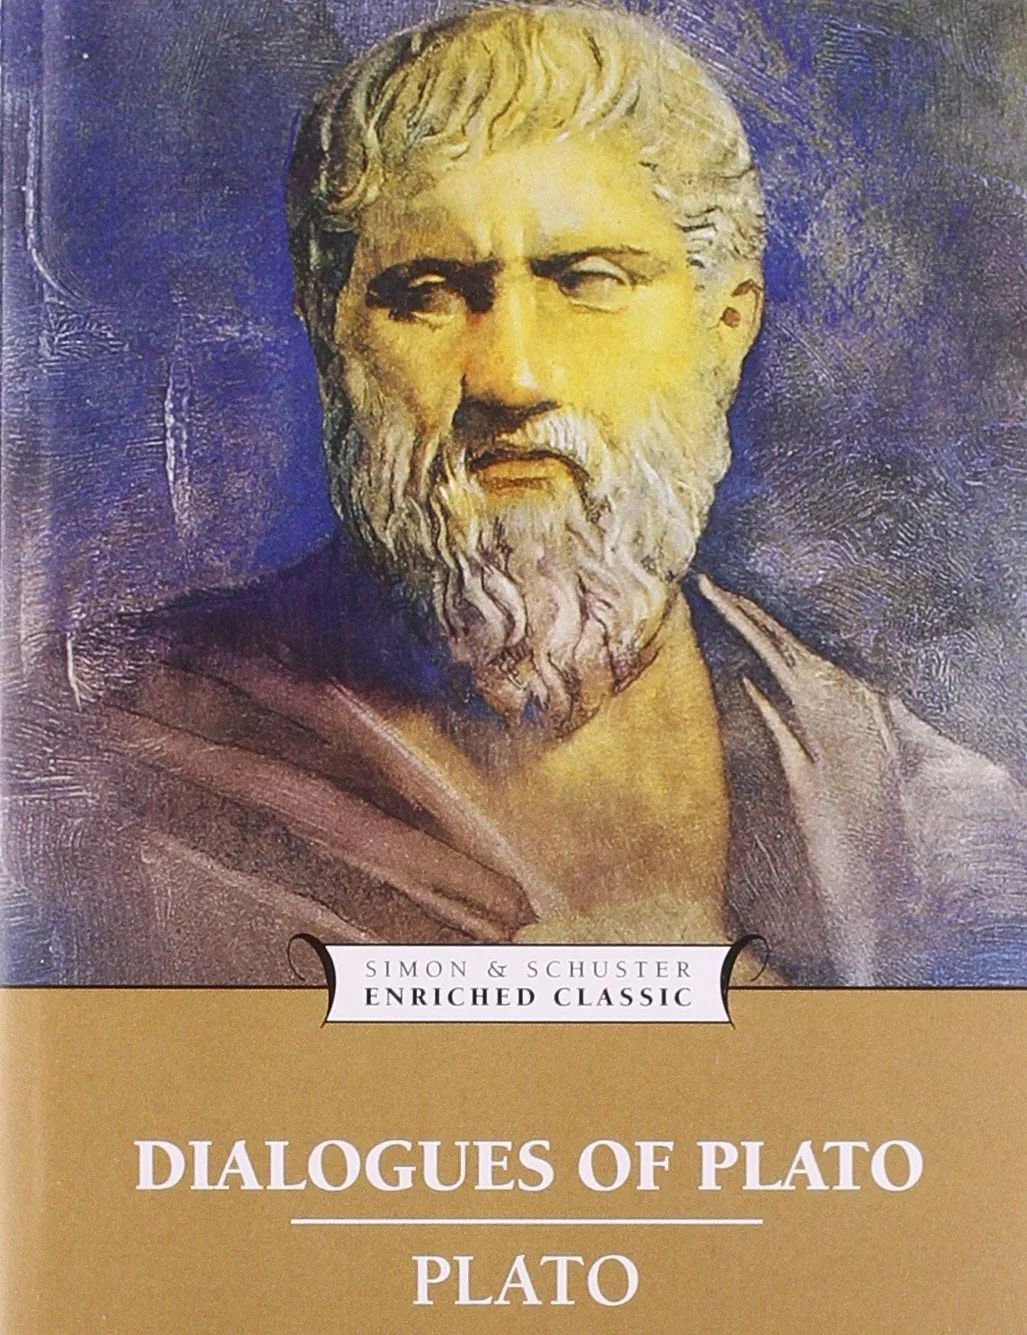 柏拉图认为处于变化_罗素认为柏拉图在_柏拉图认为处于变化